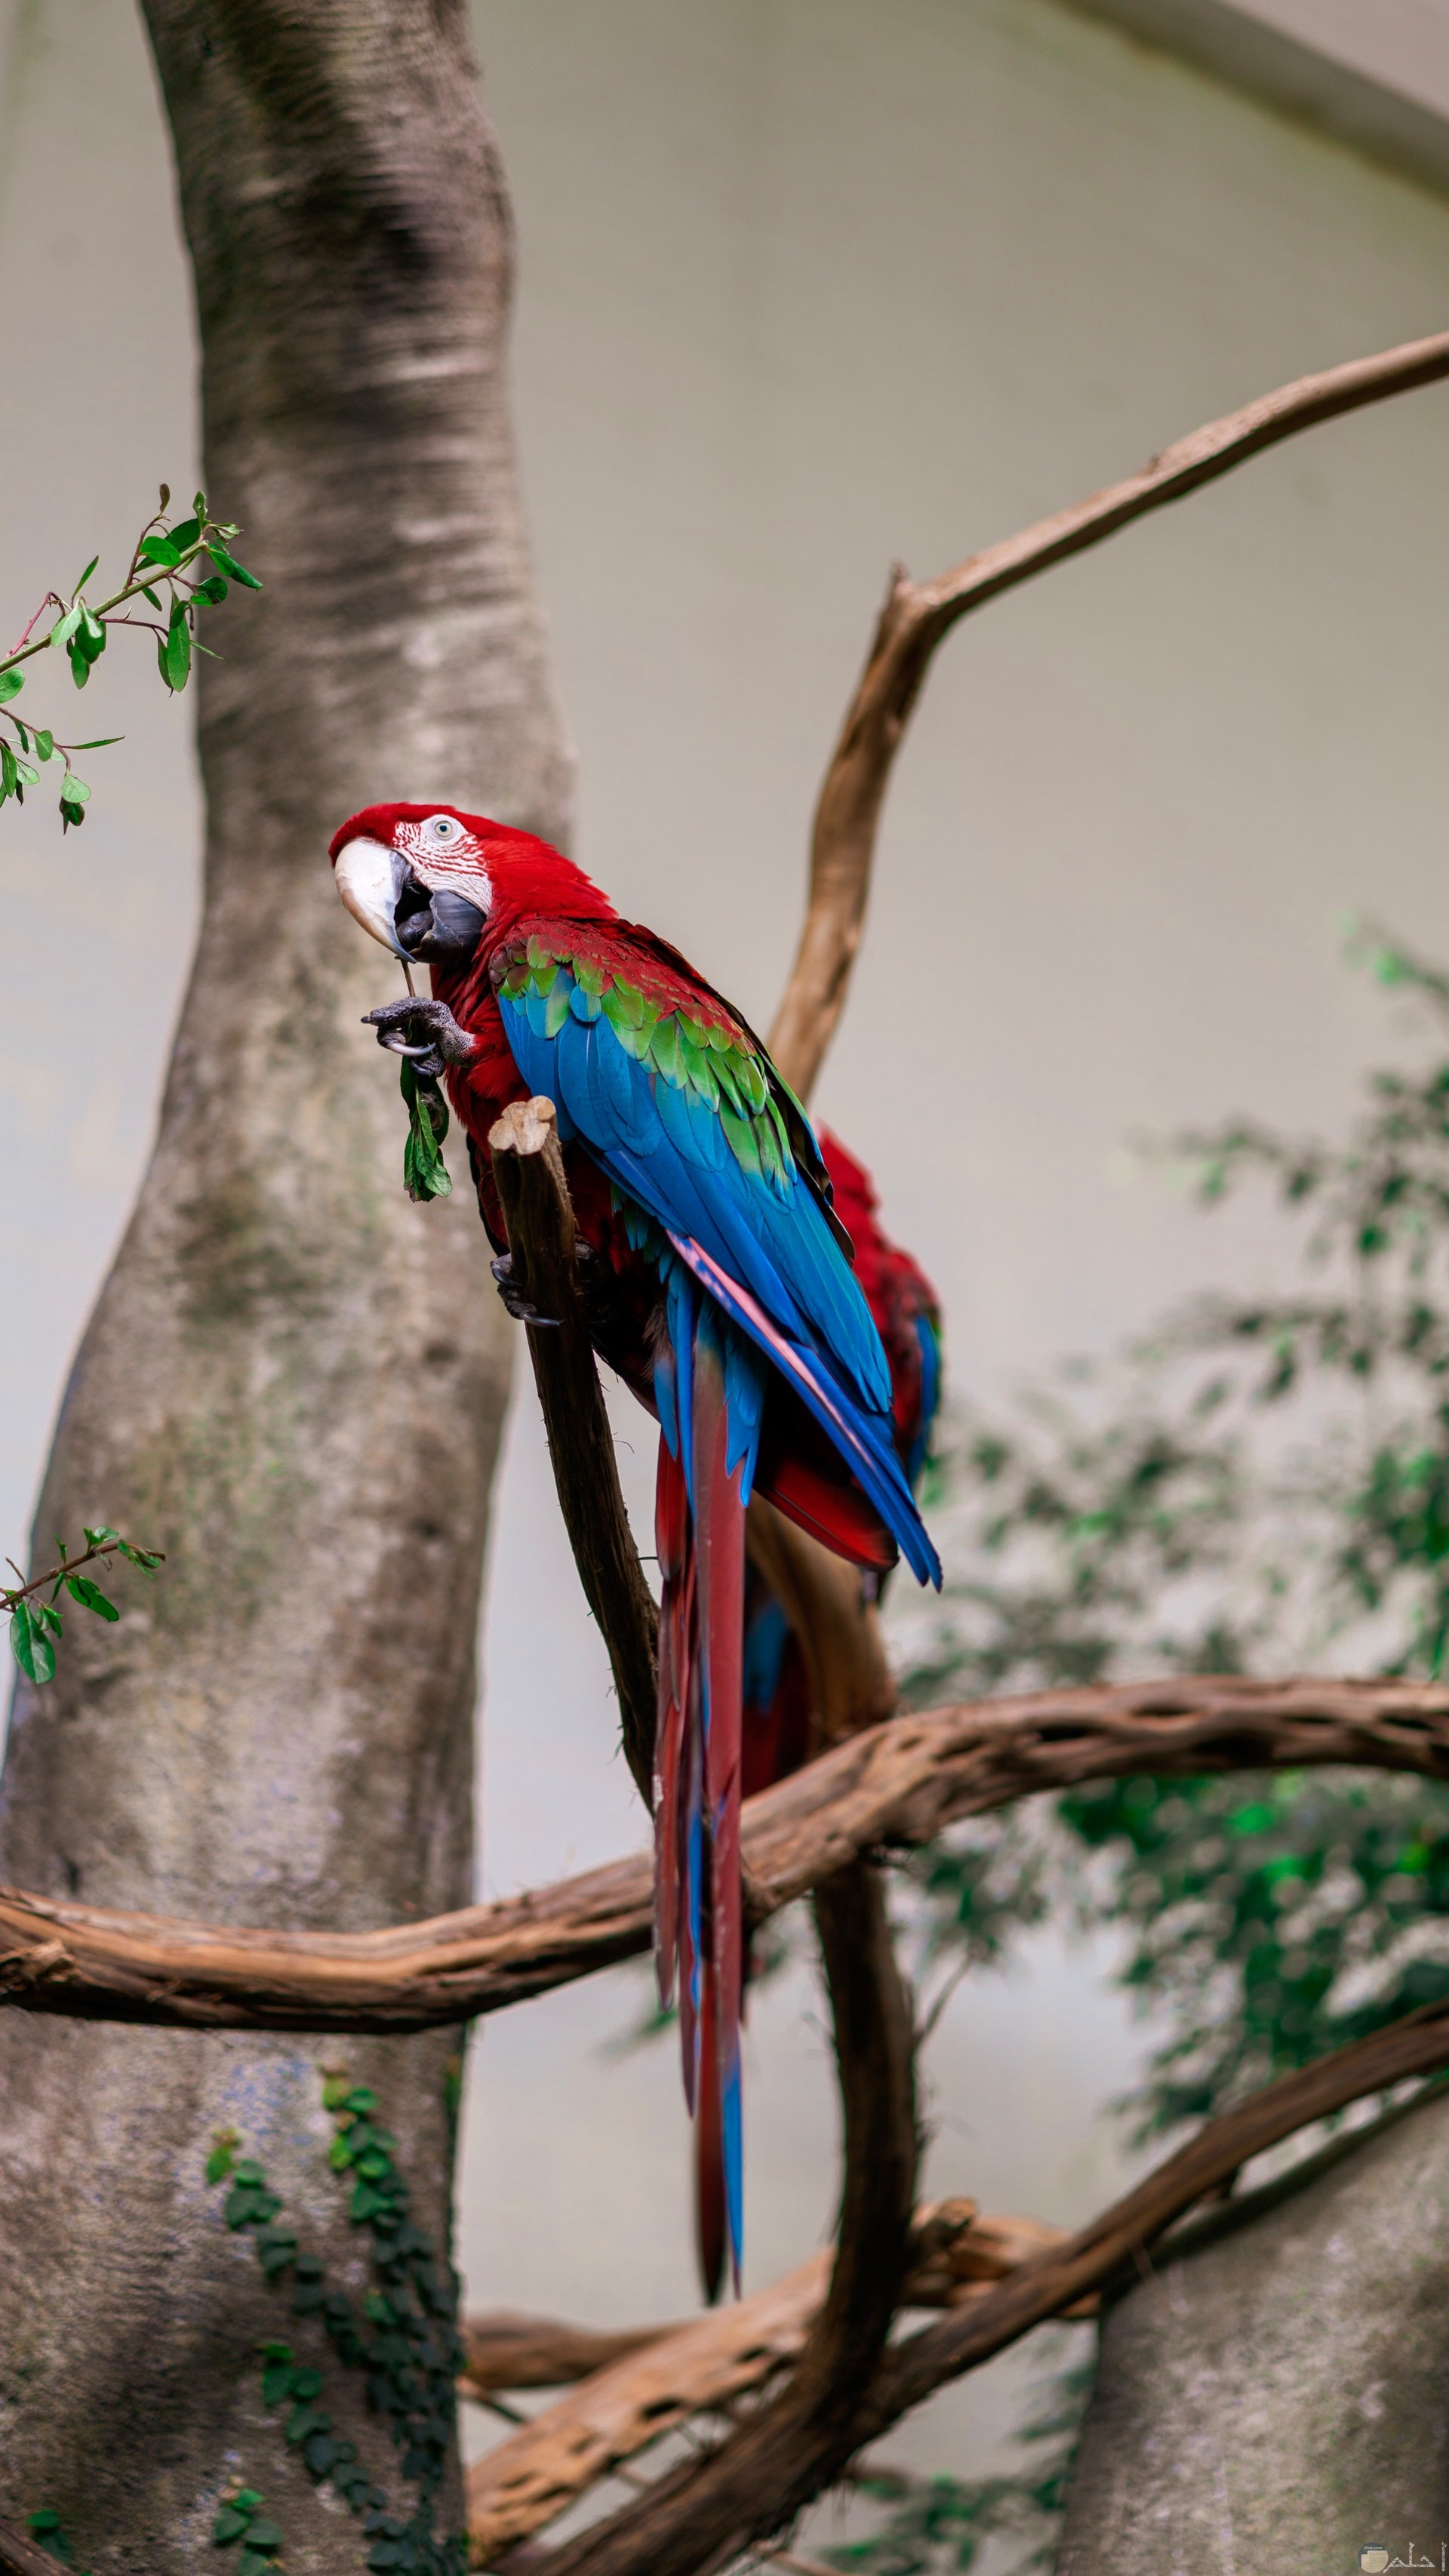 صورة جميلة لطائر ملون باللون الأخضر والأزرق والأحمر واقف علي غصن شجرة